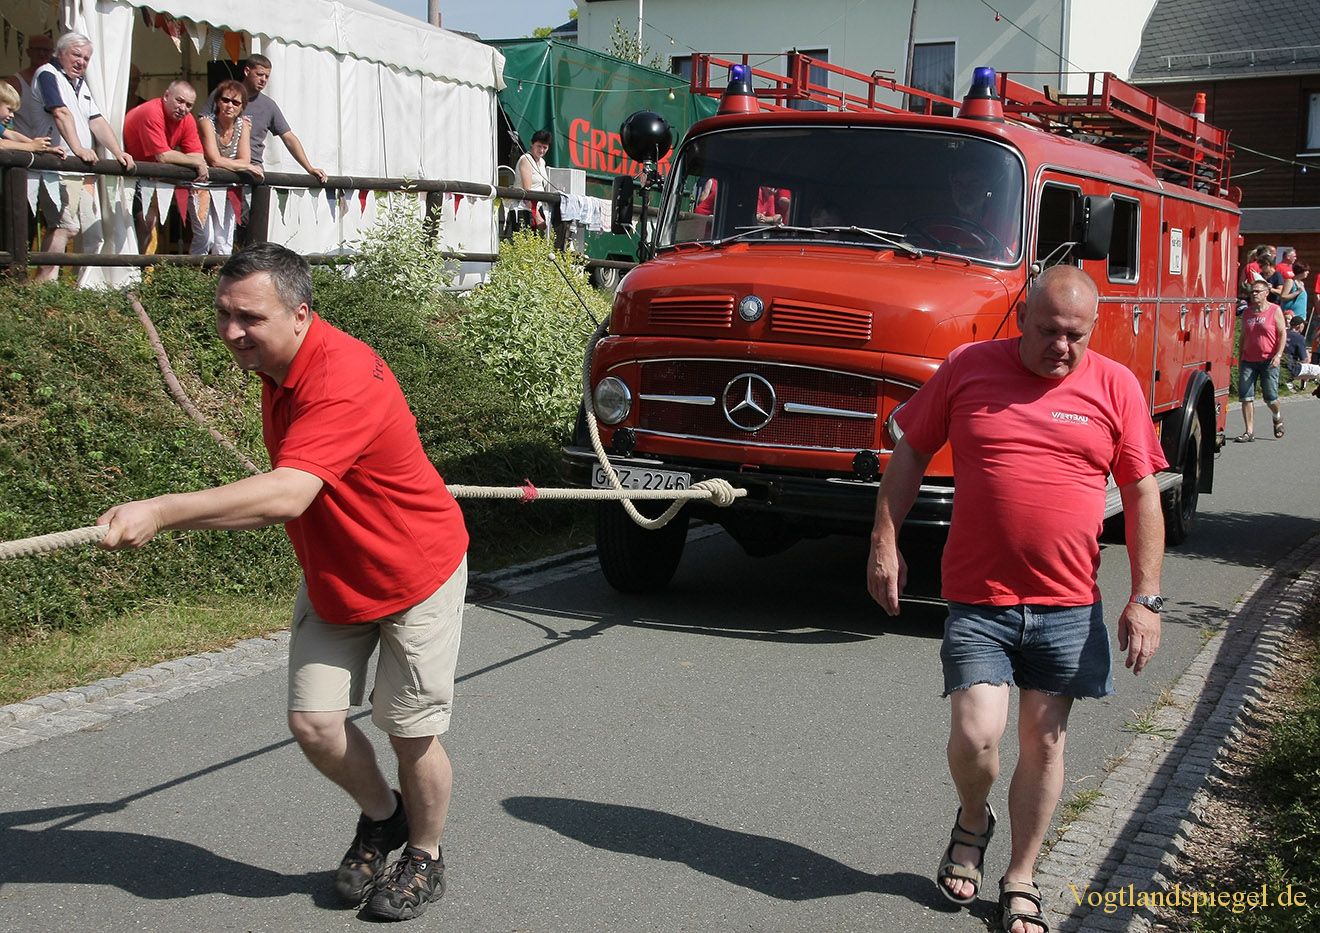 Daßlitzer Feuerwehrautoziehen als Höhepunkt des Festwochenendes